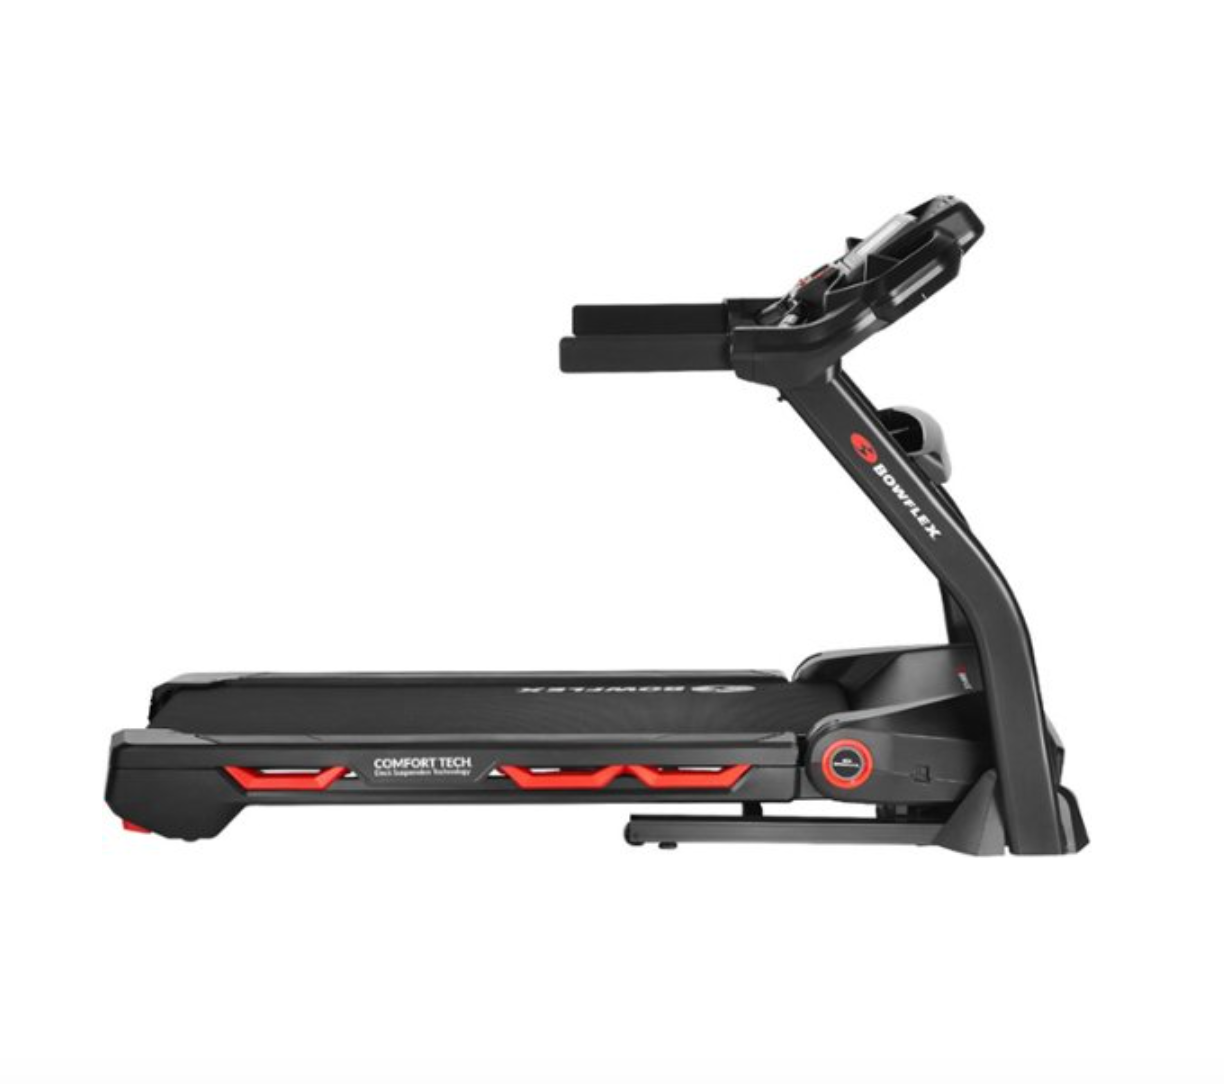 Bowflex Treadmill 7